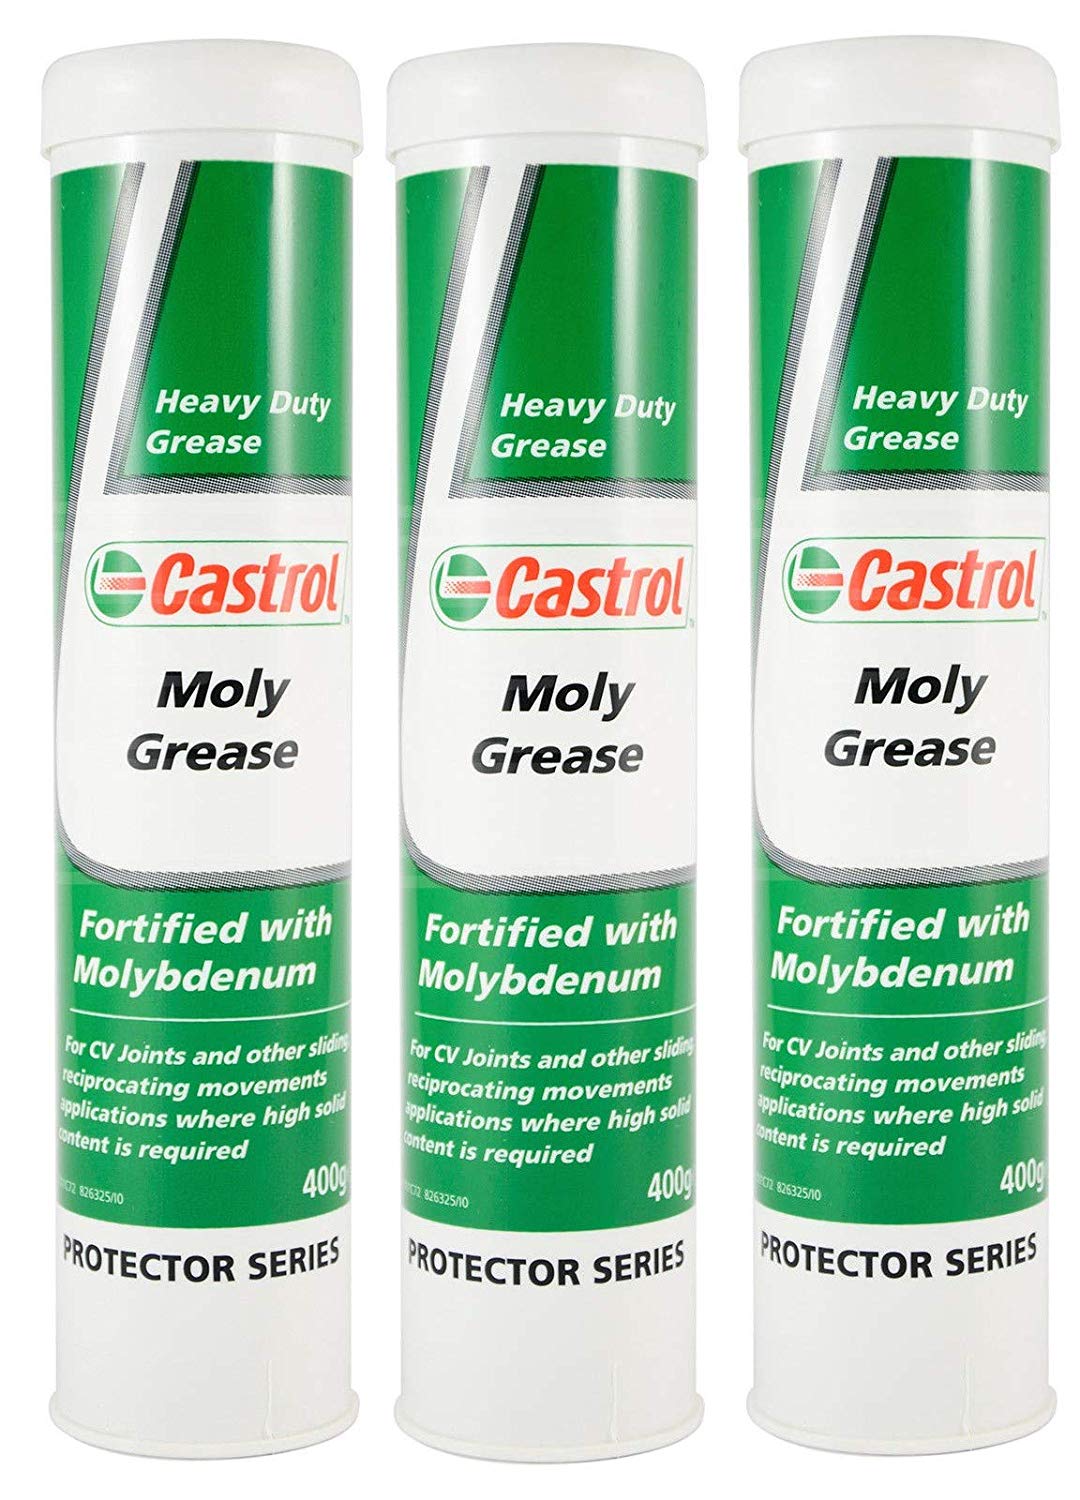 Castrol moly grease и его особенности для широкого применения, технические характеристики, рекомендации